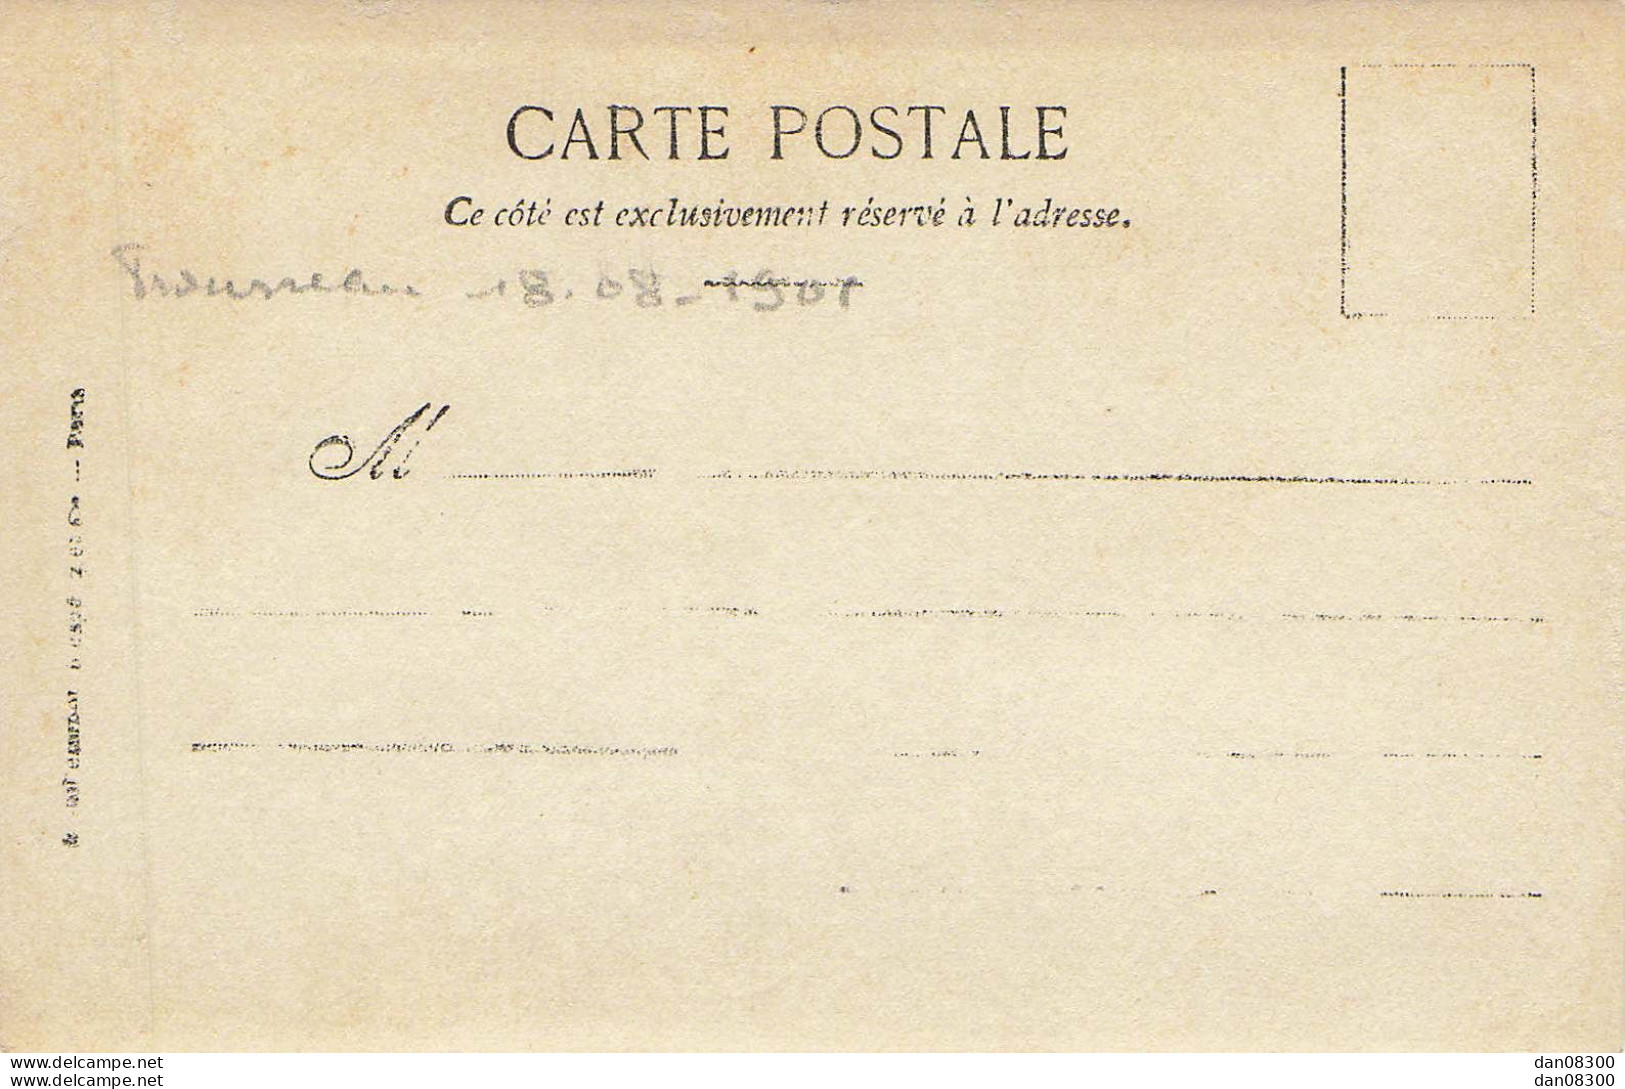 CARTE PHOTO IDENTIFIEE PAR MOI UNE VUE DE L'HOPITAL TROUSSEAU A PARIS EN 1901  VUE AGRANDIE - To Identify